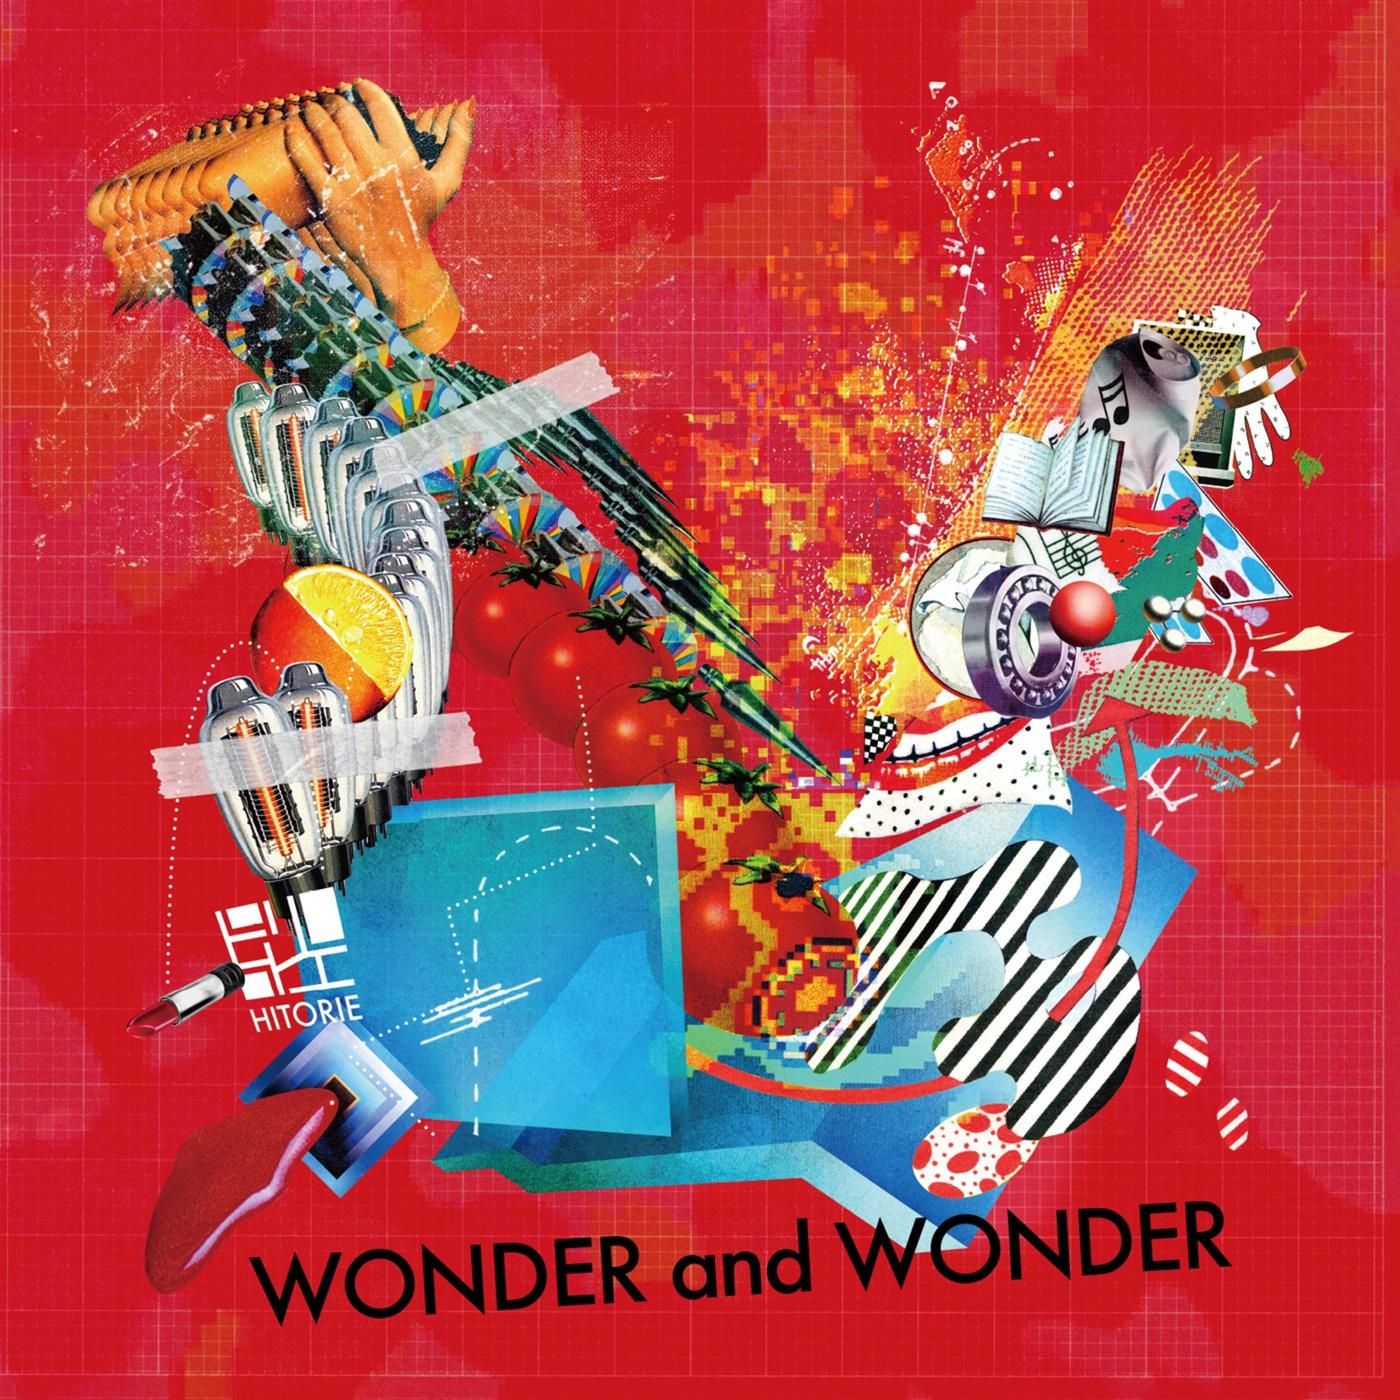 ゴーストロール歌词 歌手ヒトリエ-专辑WONDER and WONDER-单曲《ゴーストロール》LRC歌词下载